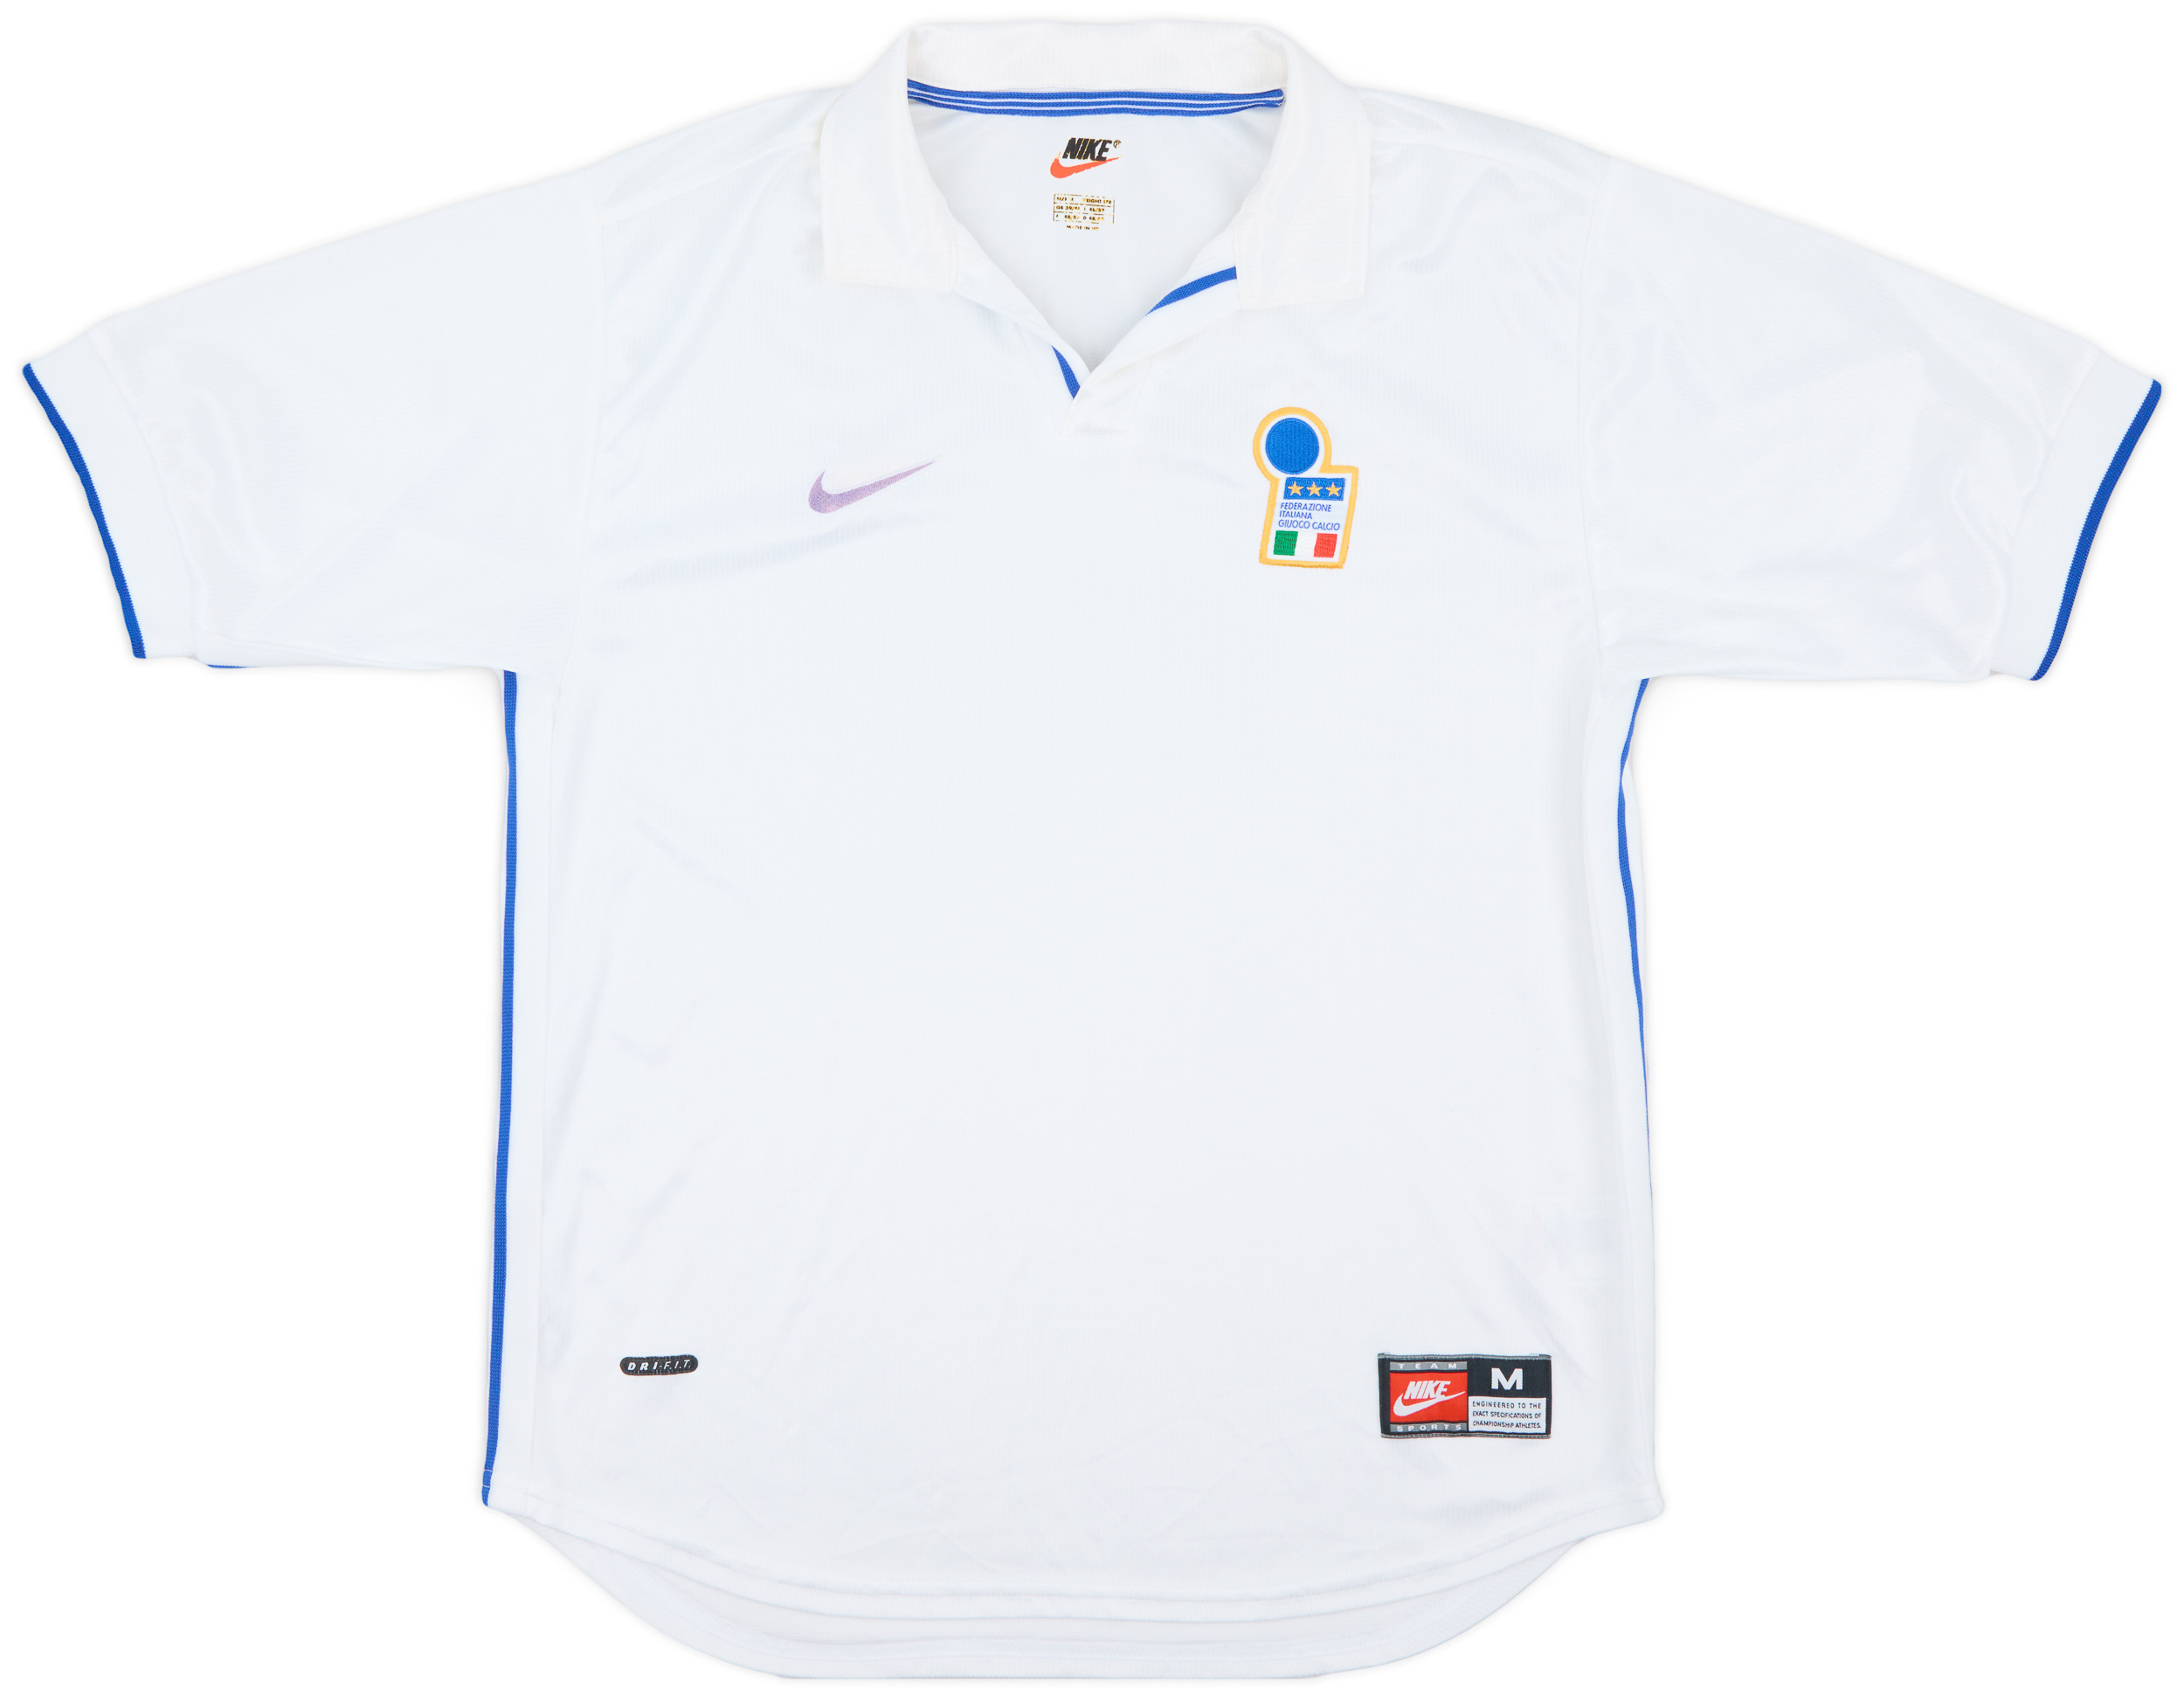 1997-98 Italy Away Shirt - 5/10 - ()